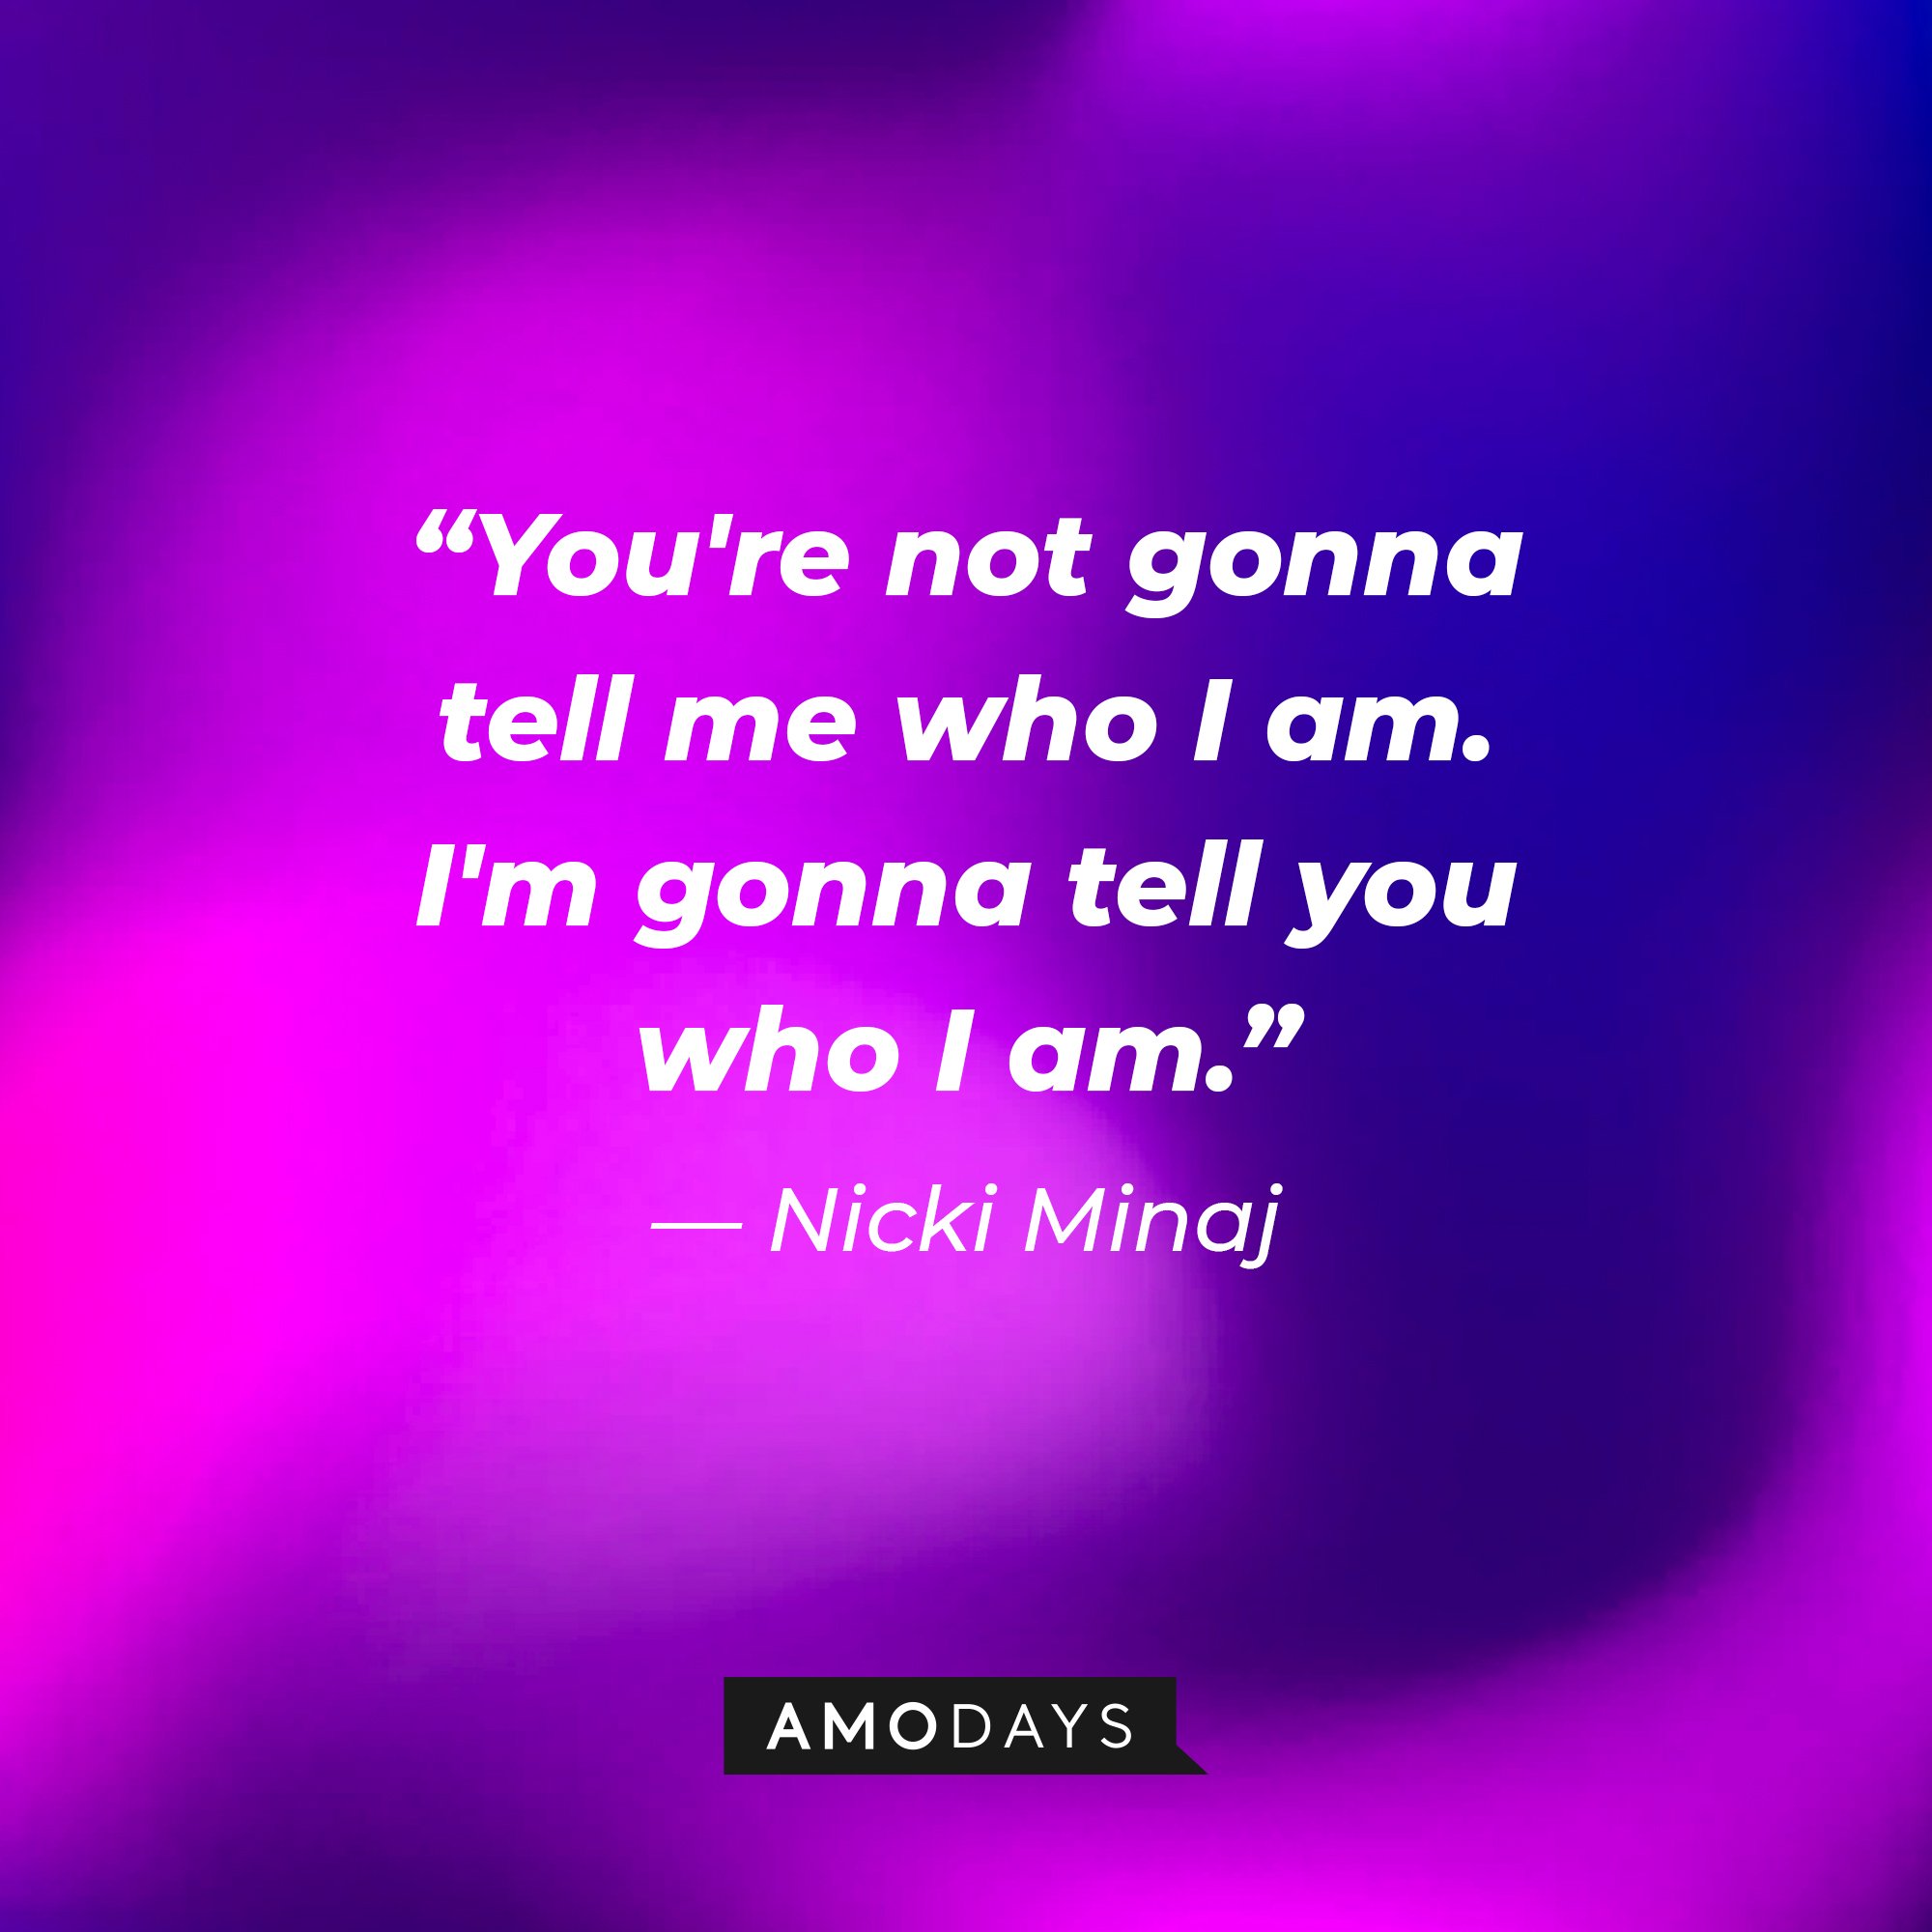 Nicki Minaj’s quote: "You're not gonna tell me who I am. I'm gonna tell you who I am." | Image: AmoDays